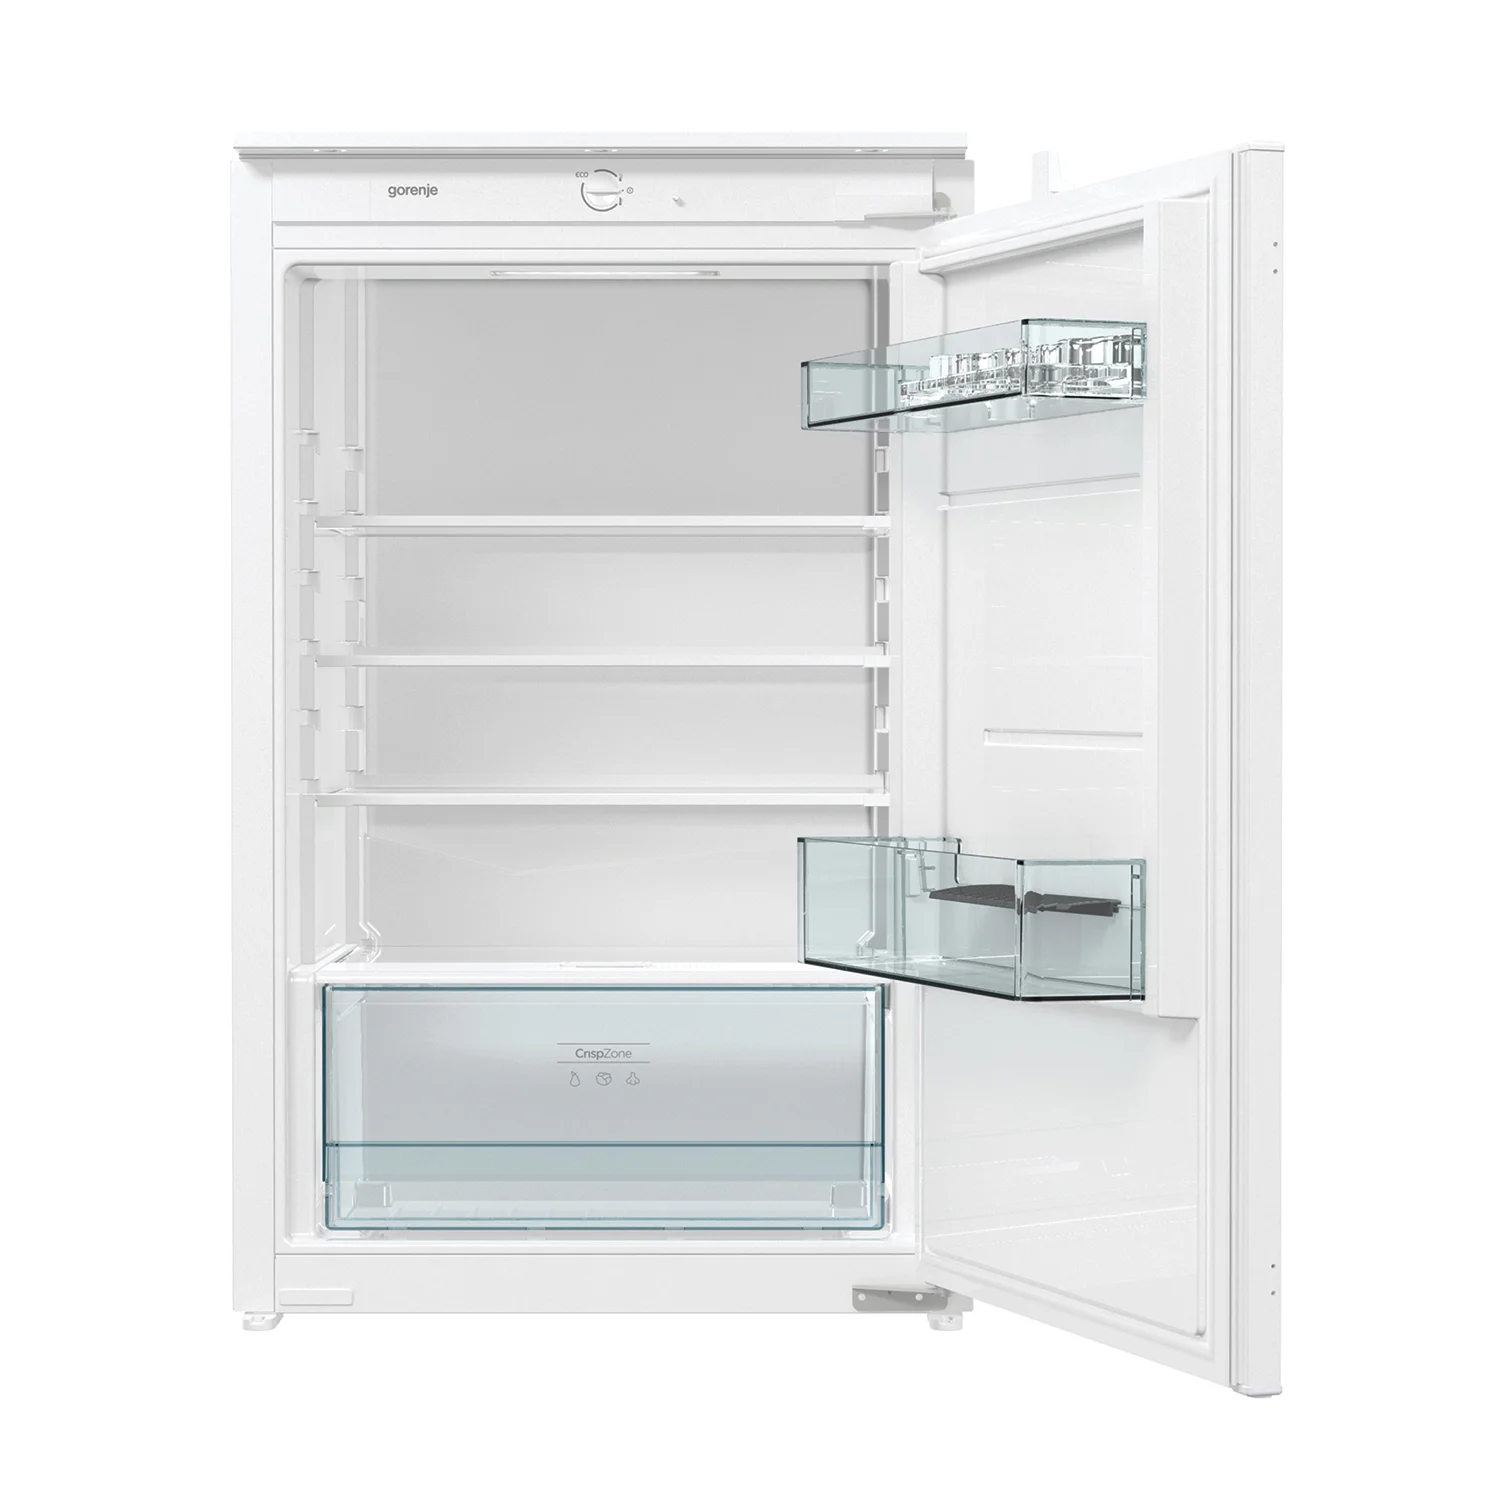 Ugradbeni frižider srednje veličine sa ladicom za odlaganje voća i povrća.